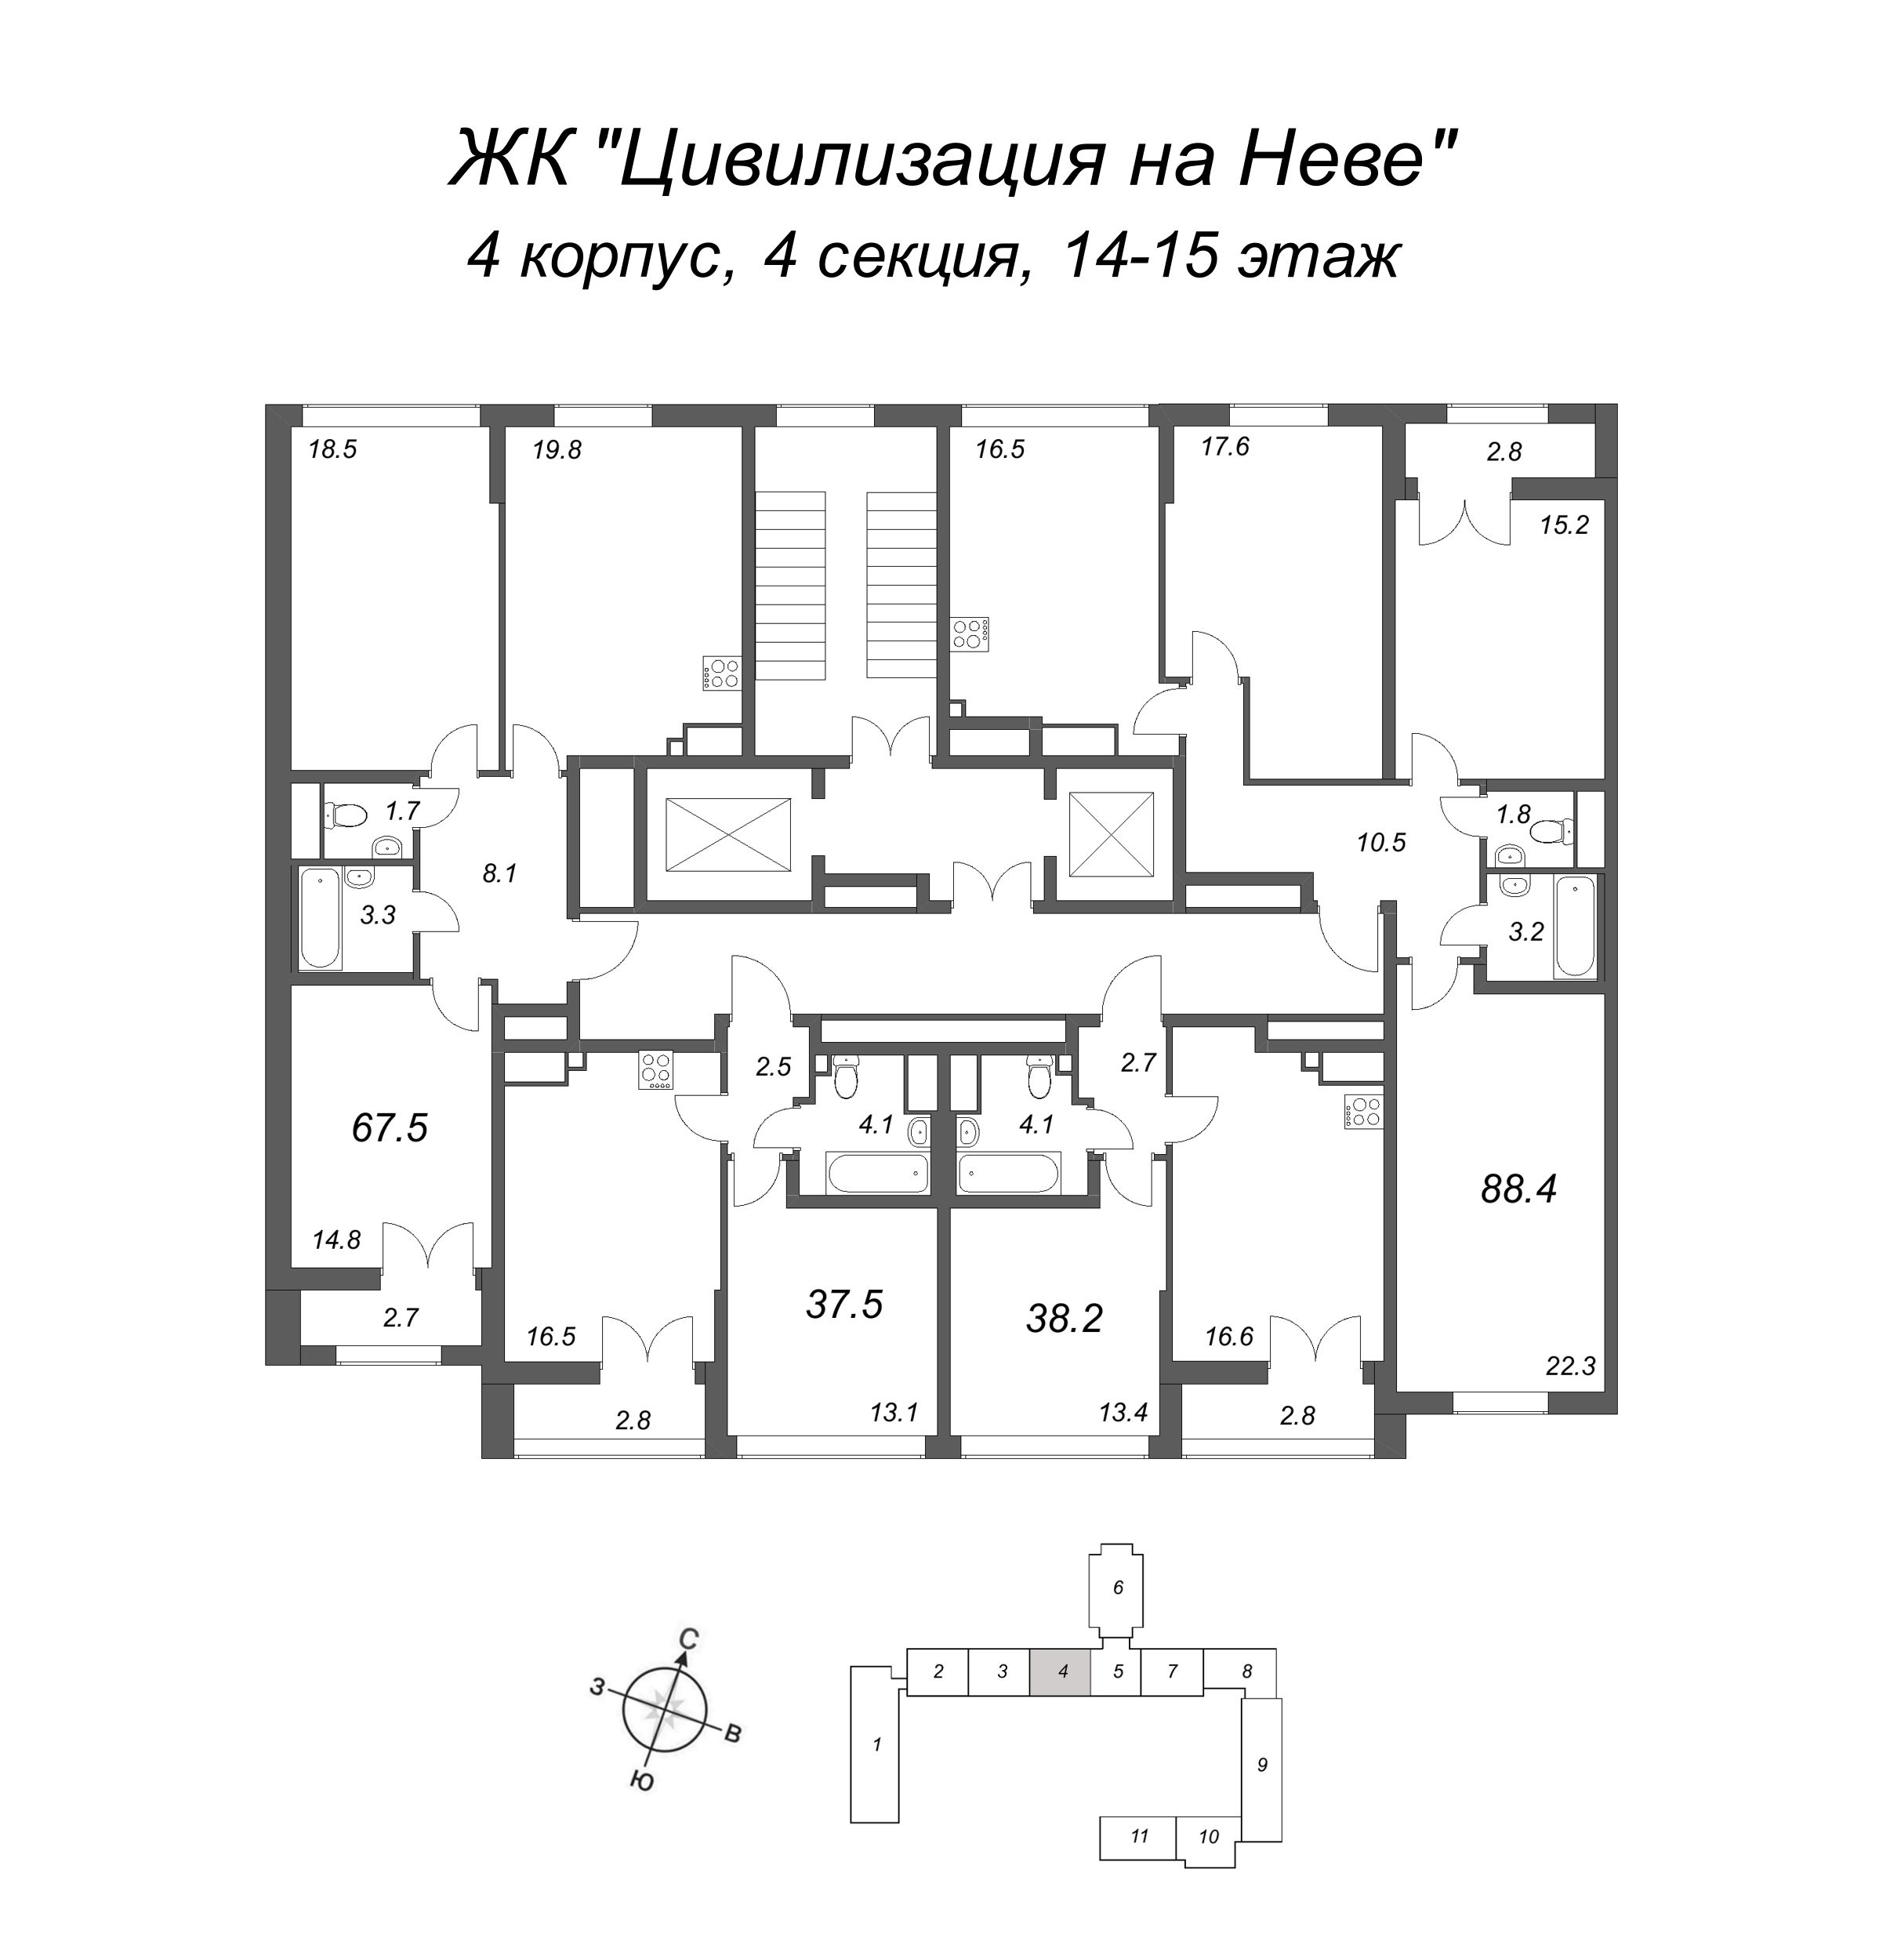 3-комнатная (Евро) квартира, 67.5 м² в ЖК "Цивилизация на Неве" - планировка этажа